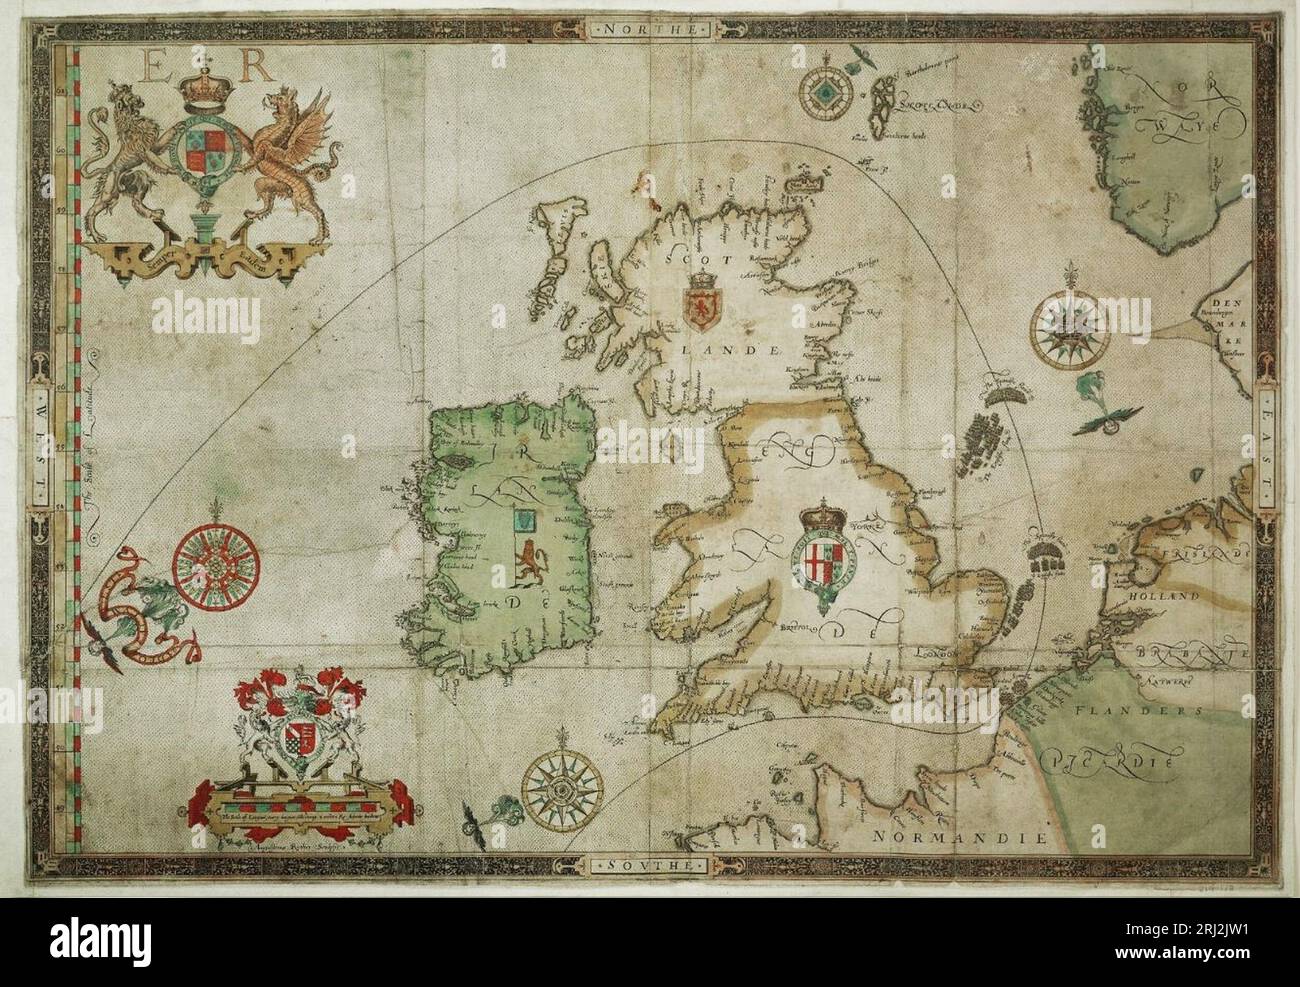 Une carte montrant la route empruntée par l'Armada espagnole en 1588. La flotte espagnole arrive le long des approches occidentales et est engagée au large de Plymouth et de l'île de Wight, avant la bataille finale et la défaite au large de Gravelines en France. Les restes de la flotte espagnole ont continué vers le nord, retournant en Espagne en passant au nord de l'Écosse Banque D'Images